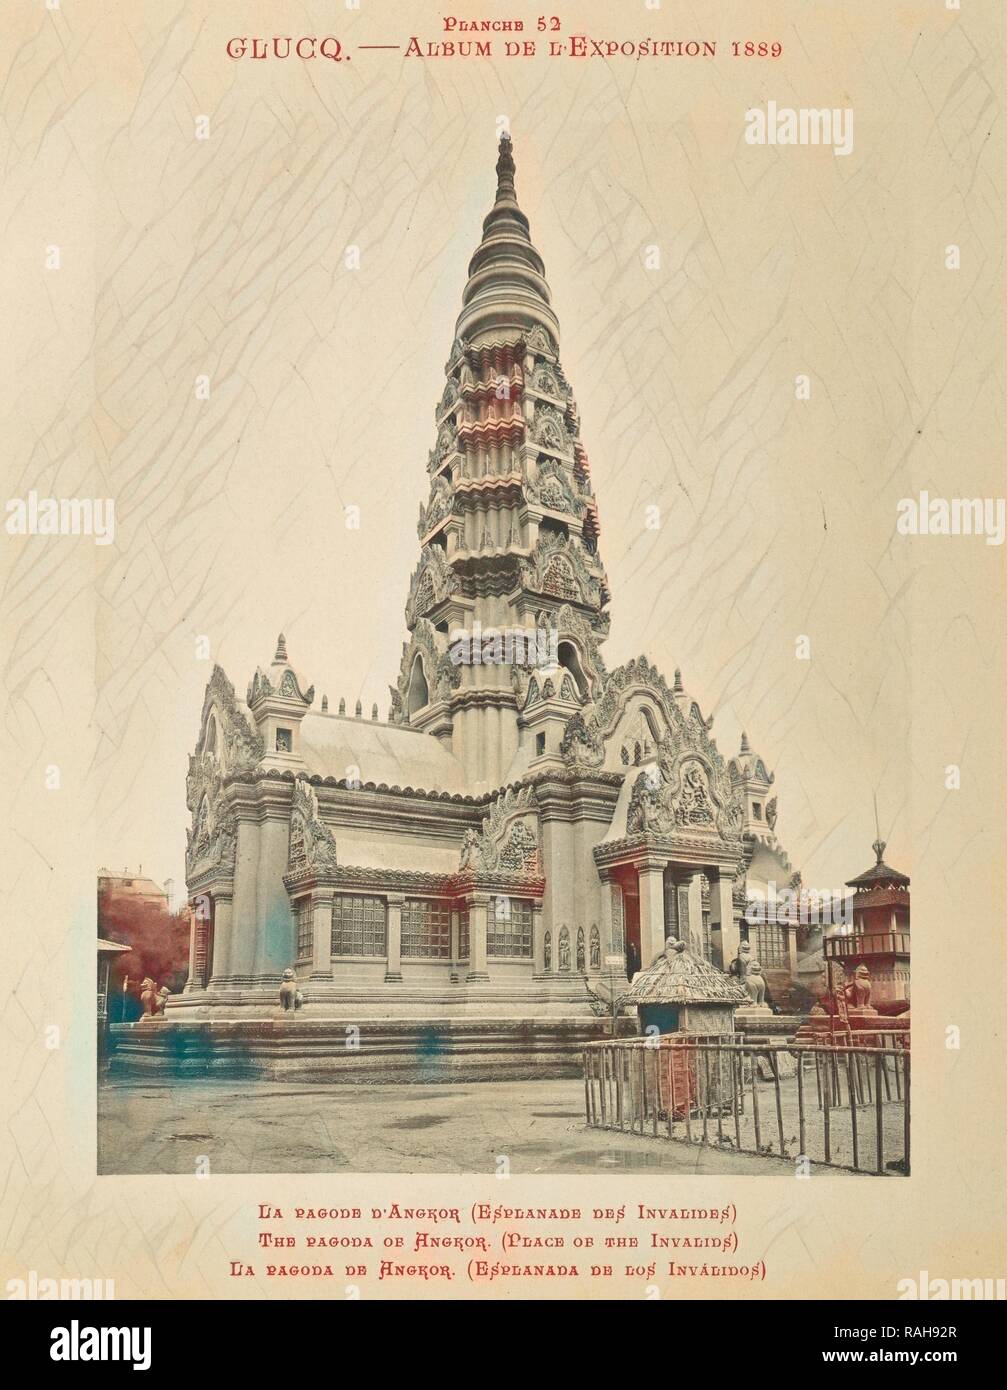 La pagode d'Angkor, l'album de l'exposition de 1889, Glücq, 1889. Repensé par Gibon. L'art classique avec un style moderne repensé Banque D'Images